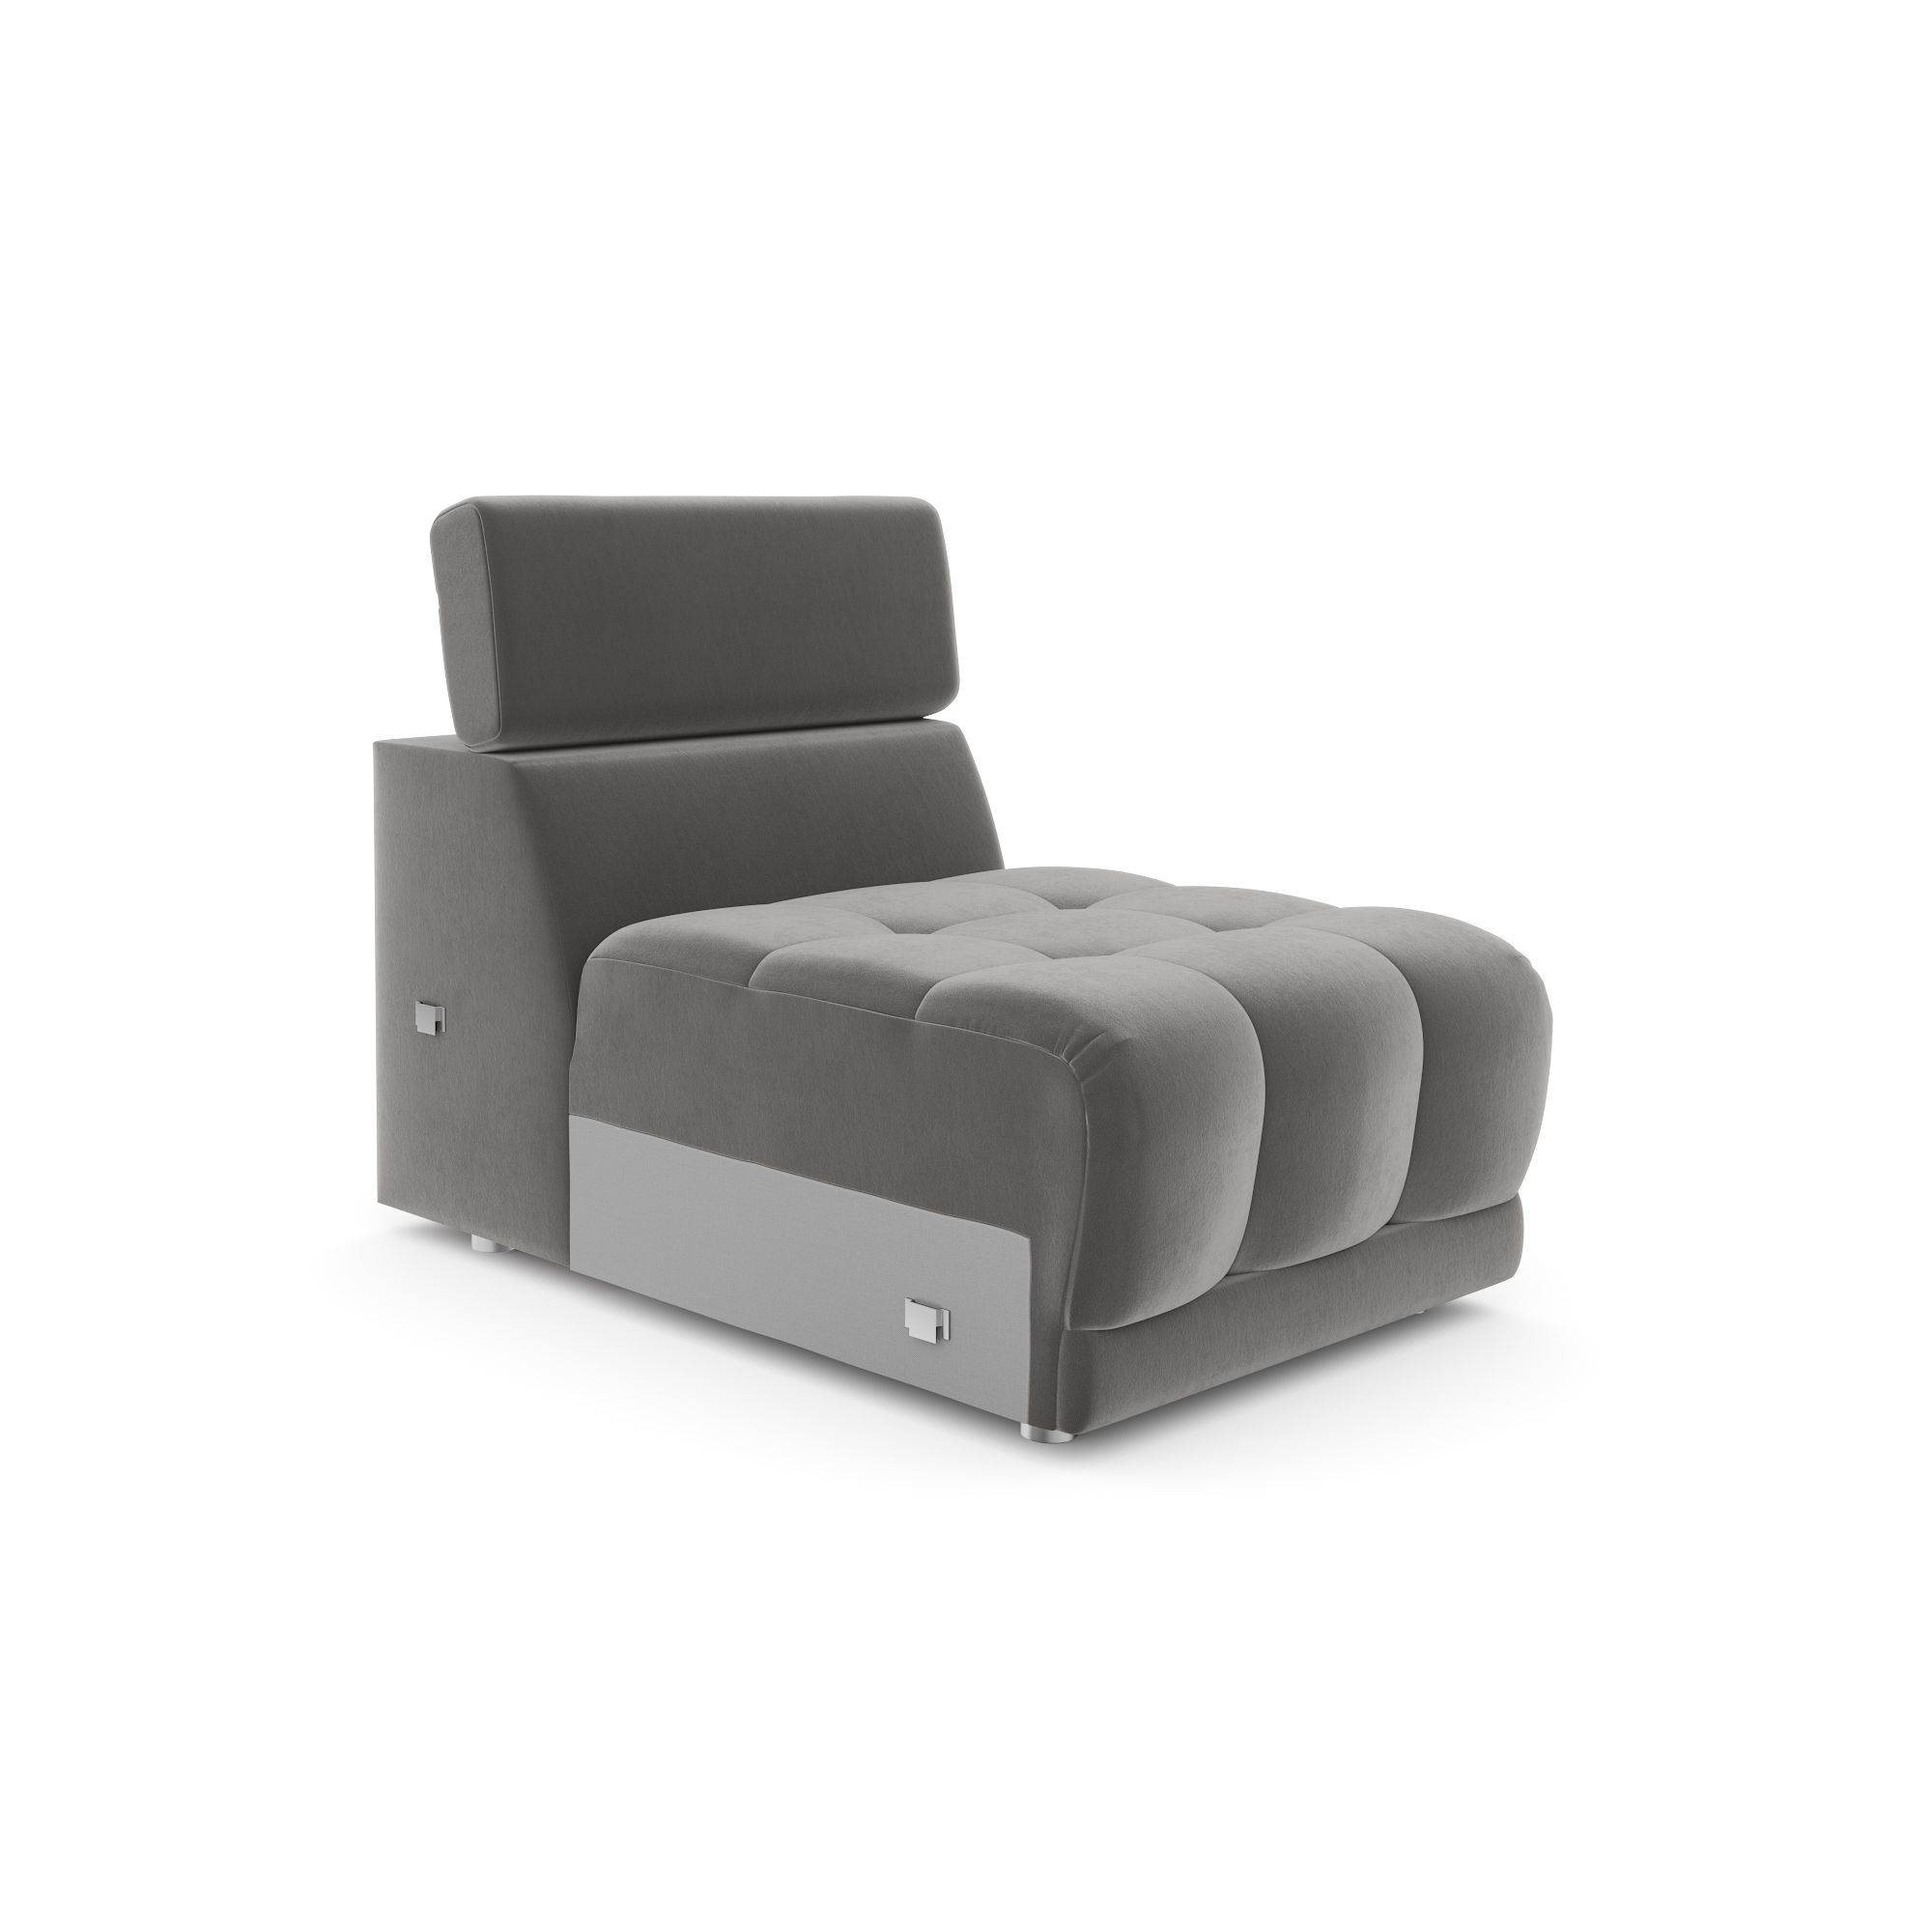 Модуль дивана Флорида кресло без подлокотников, кФЛ03.пр25.25у